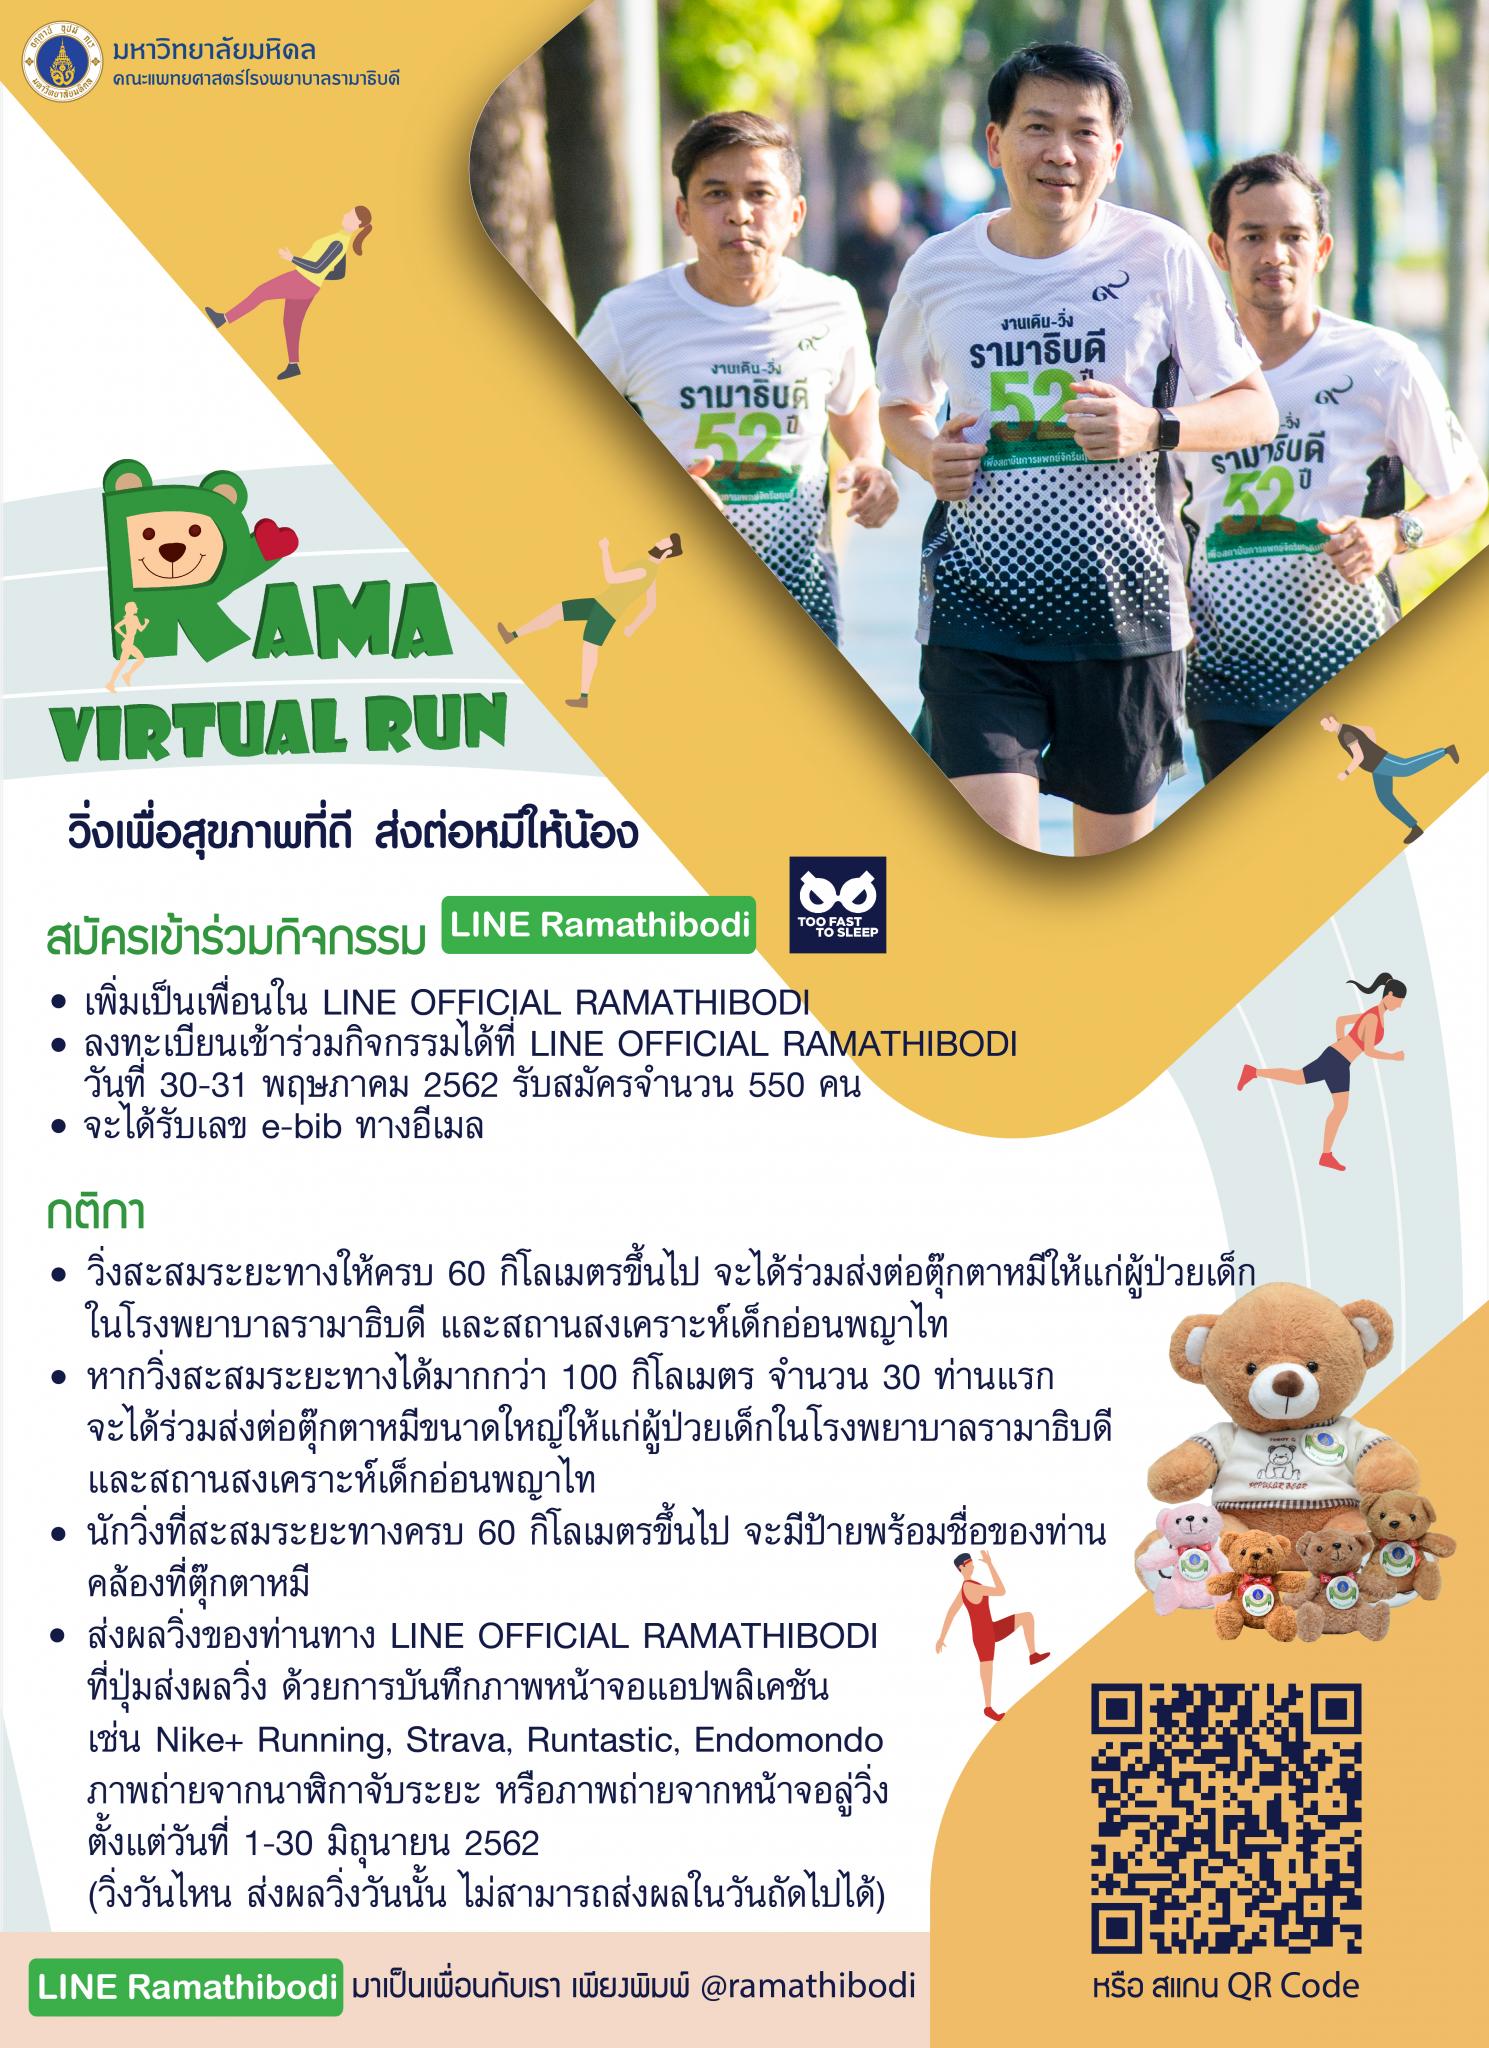 Rama Virtual Run วิ่งเพื่อสุขภาพที่ดี ส่งต่อหมีให้น้อง